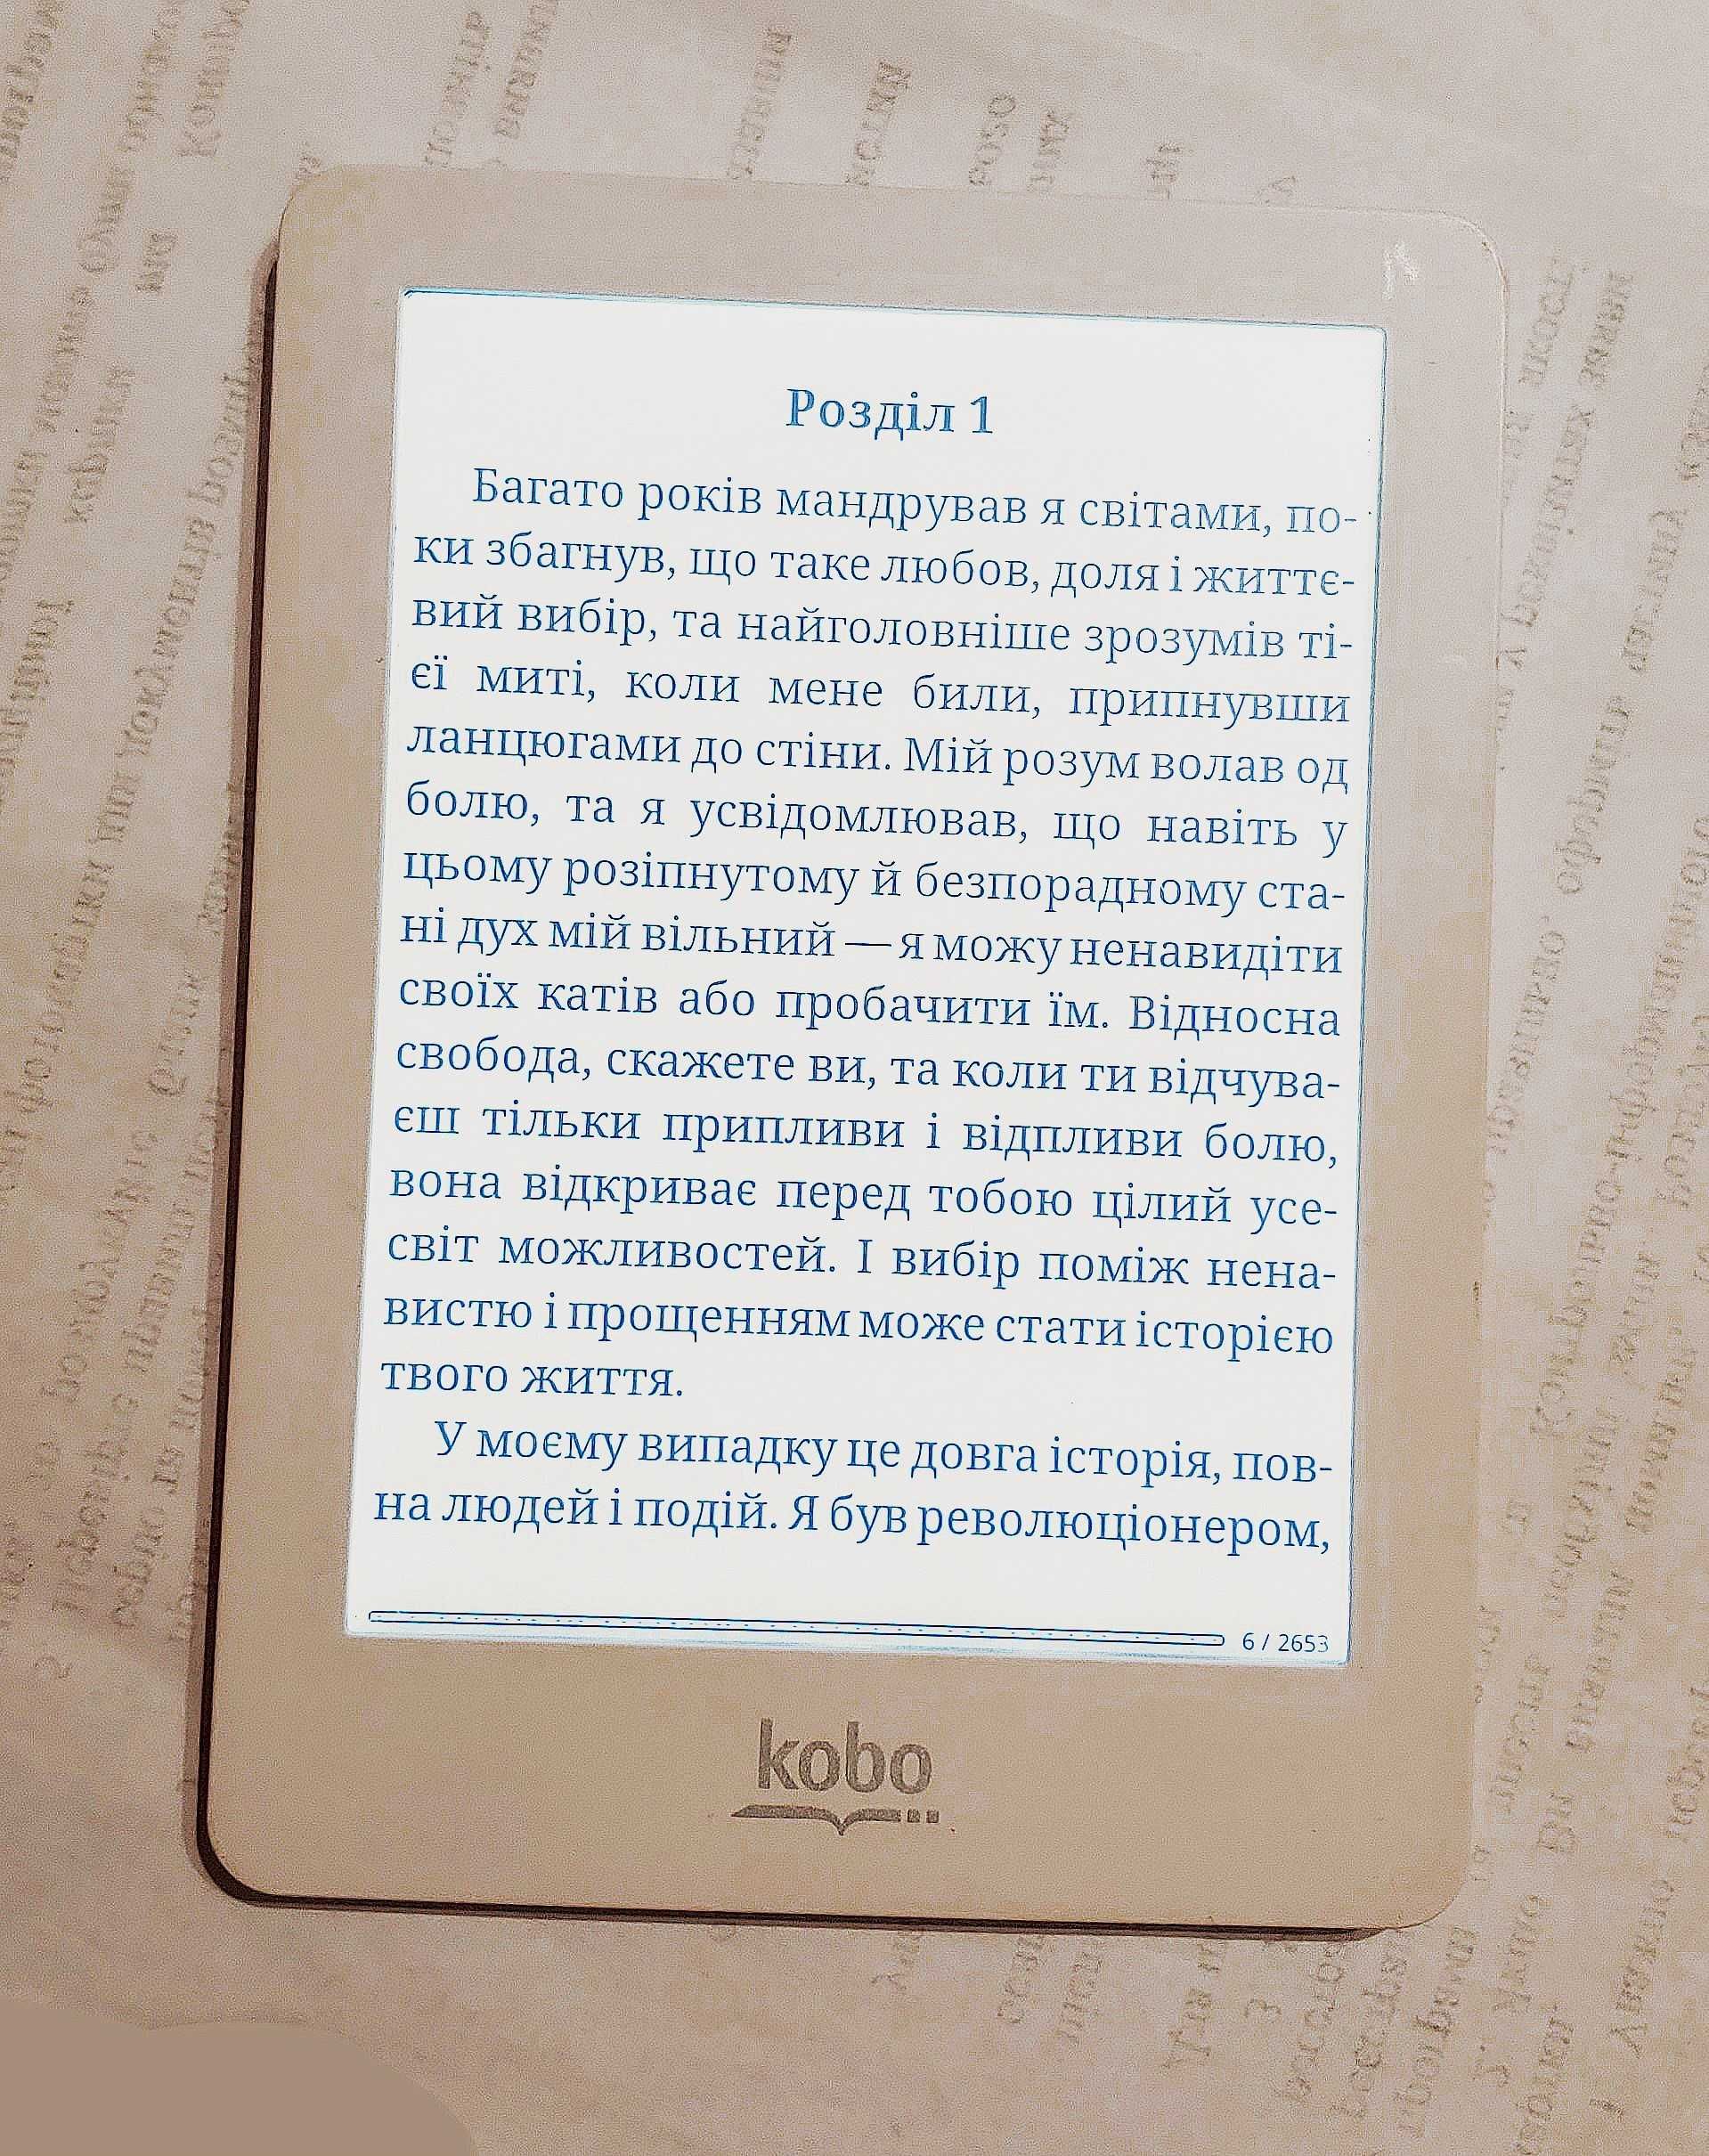 Електронна книга з підсвіткою Kobo Glo Читає всі формати, microsd слот